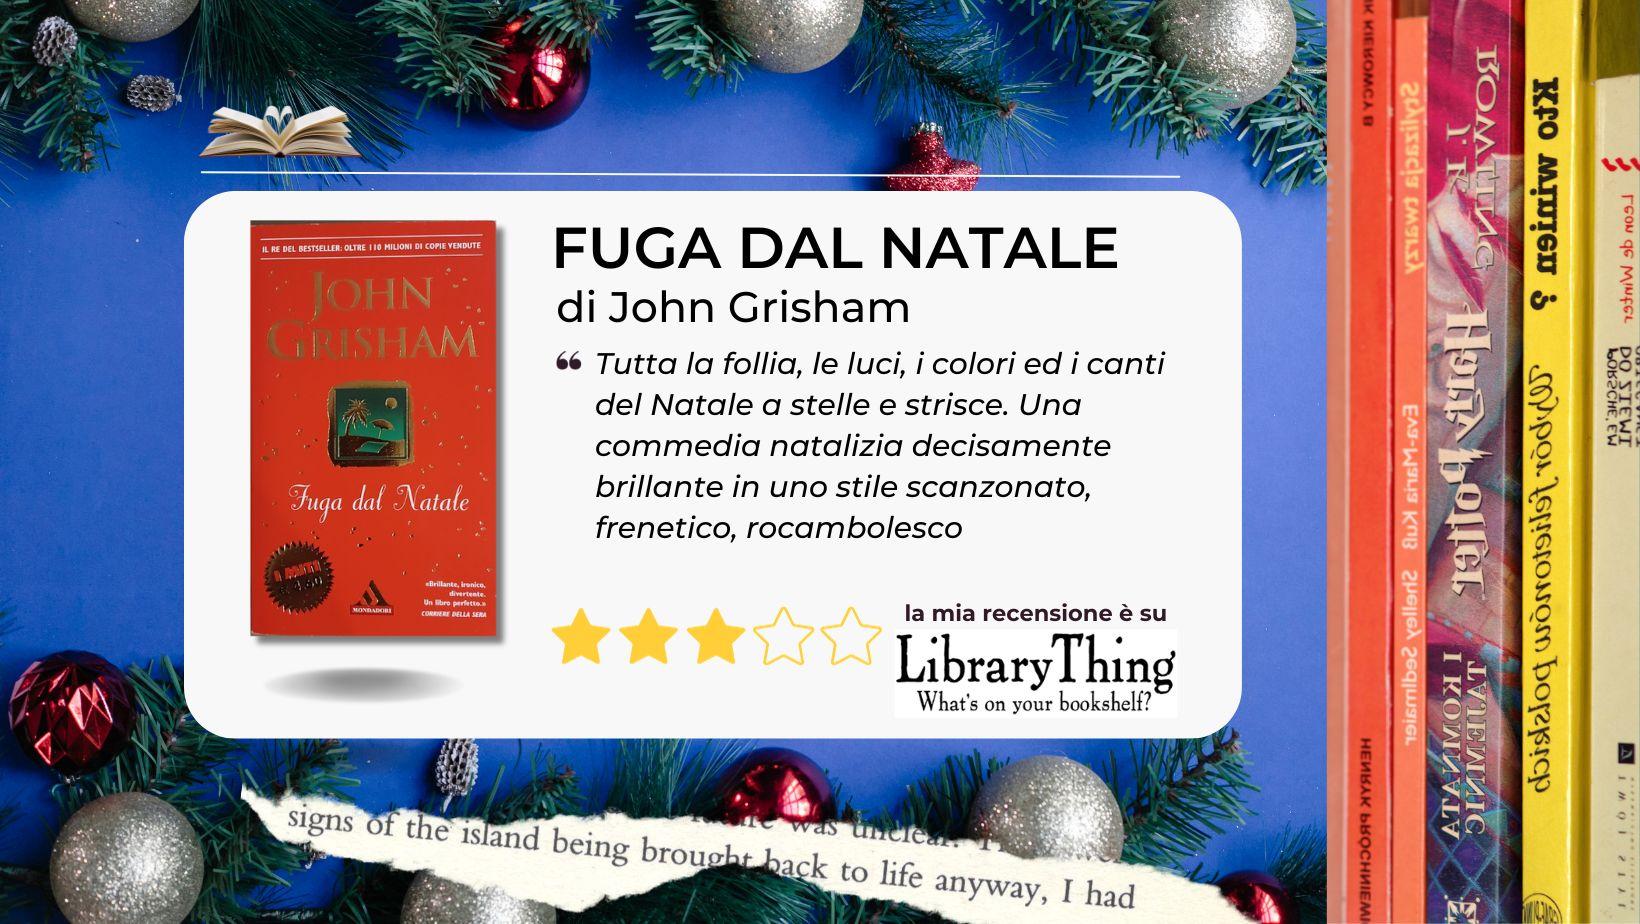 Se siete in "Fuga dal Natale" questo divertente libro di John Grisham va letto sotto l'albero